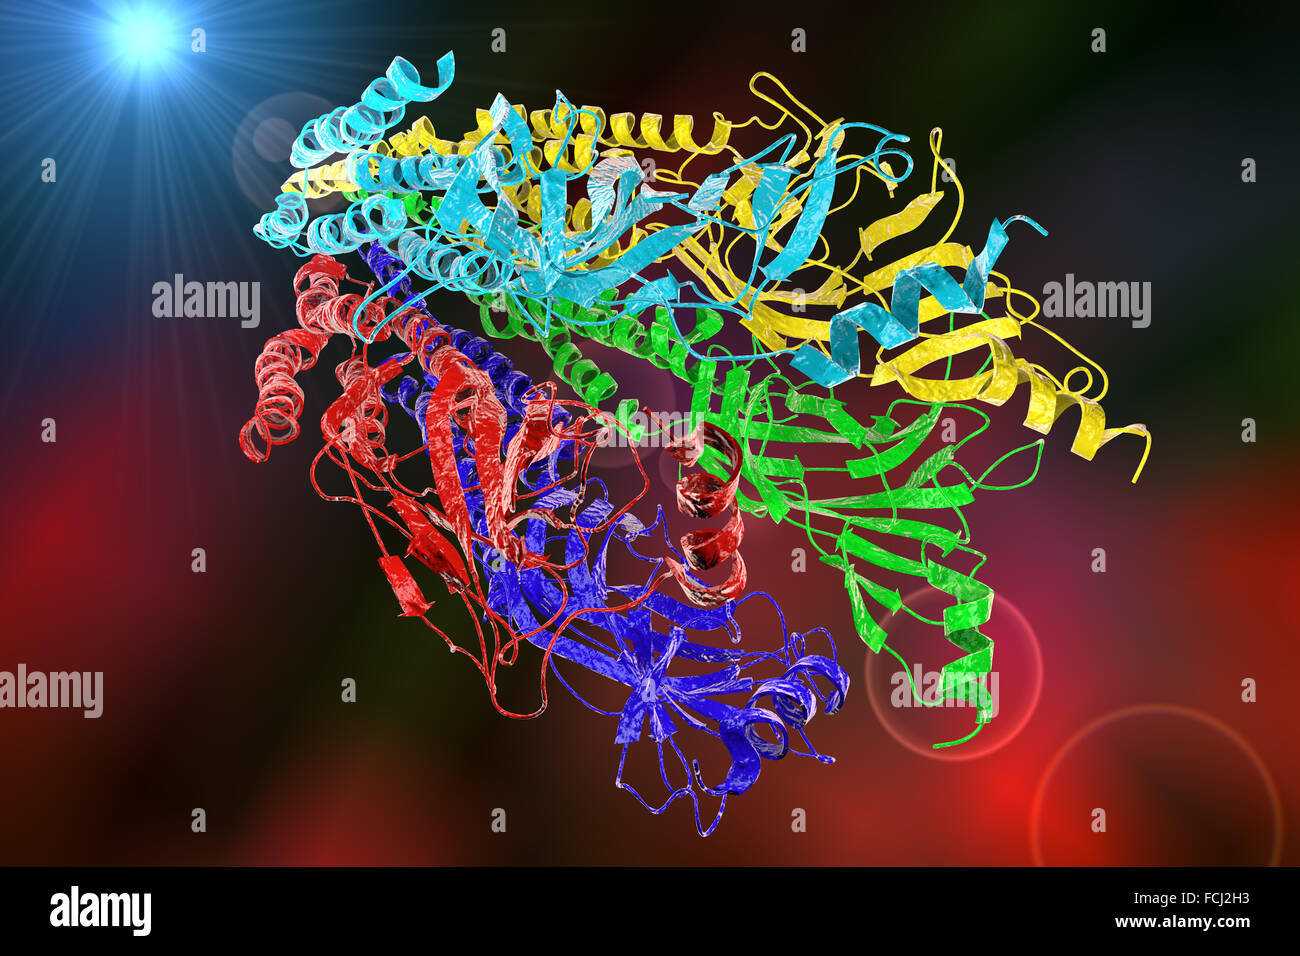 Acetylcholin-Rezeptor. Molekülmodell zeigt die Struktur eines Nikotinsäure Acetlycholine-Rezeptors. Dieser Rezeptor für den Neurotransmitter Acetylcholin, steuert elektrische Signalisierung zwischen Nerven-und Muskelzellen. Anlage von einem Acetlycholine molec Stockfoto